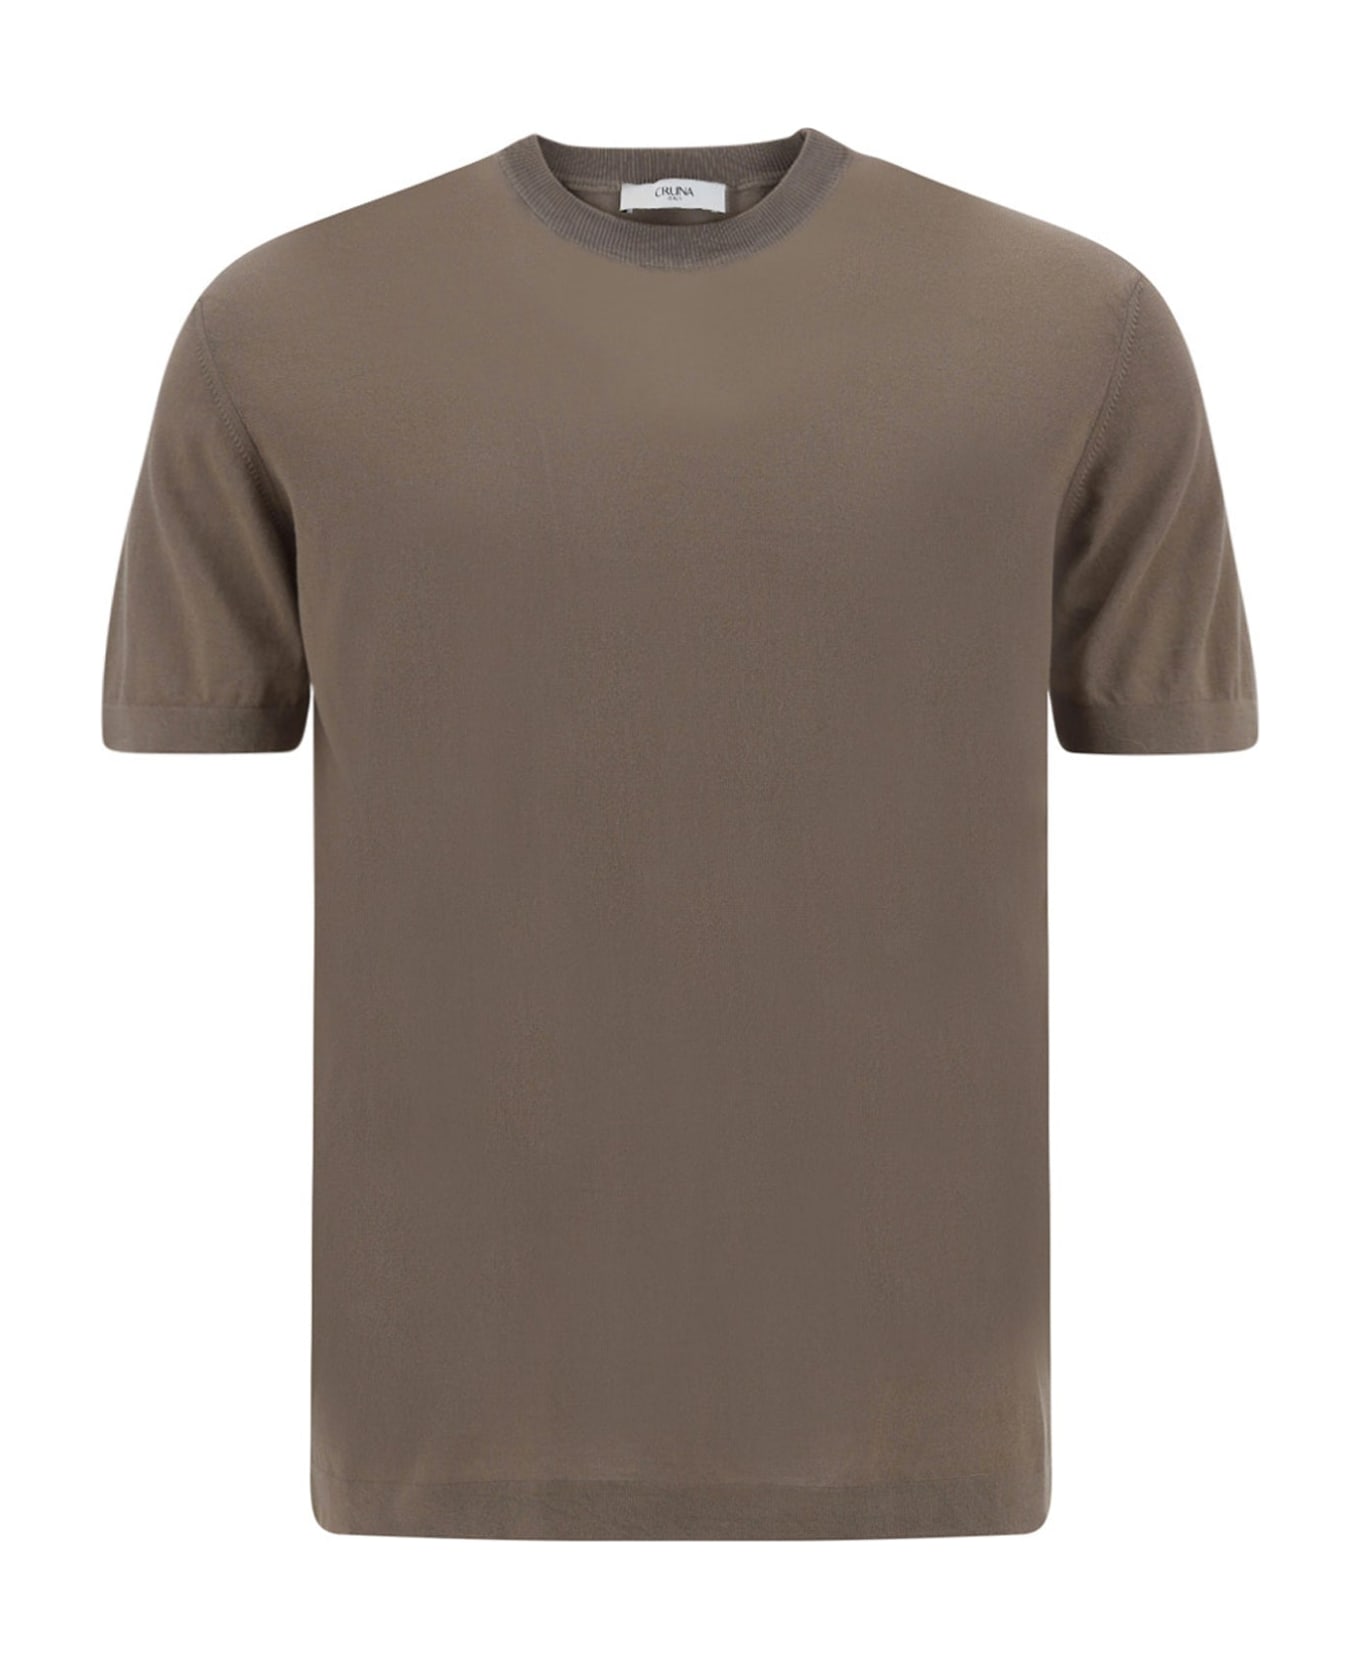 Cruna Cotton T-shirt - Beige